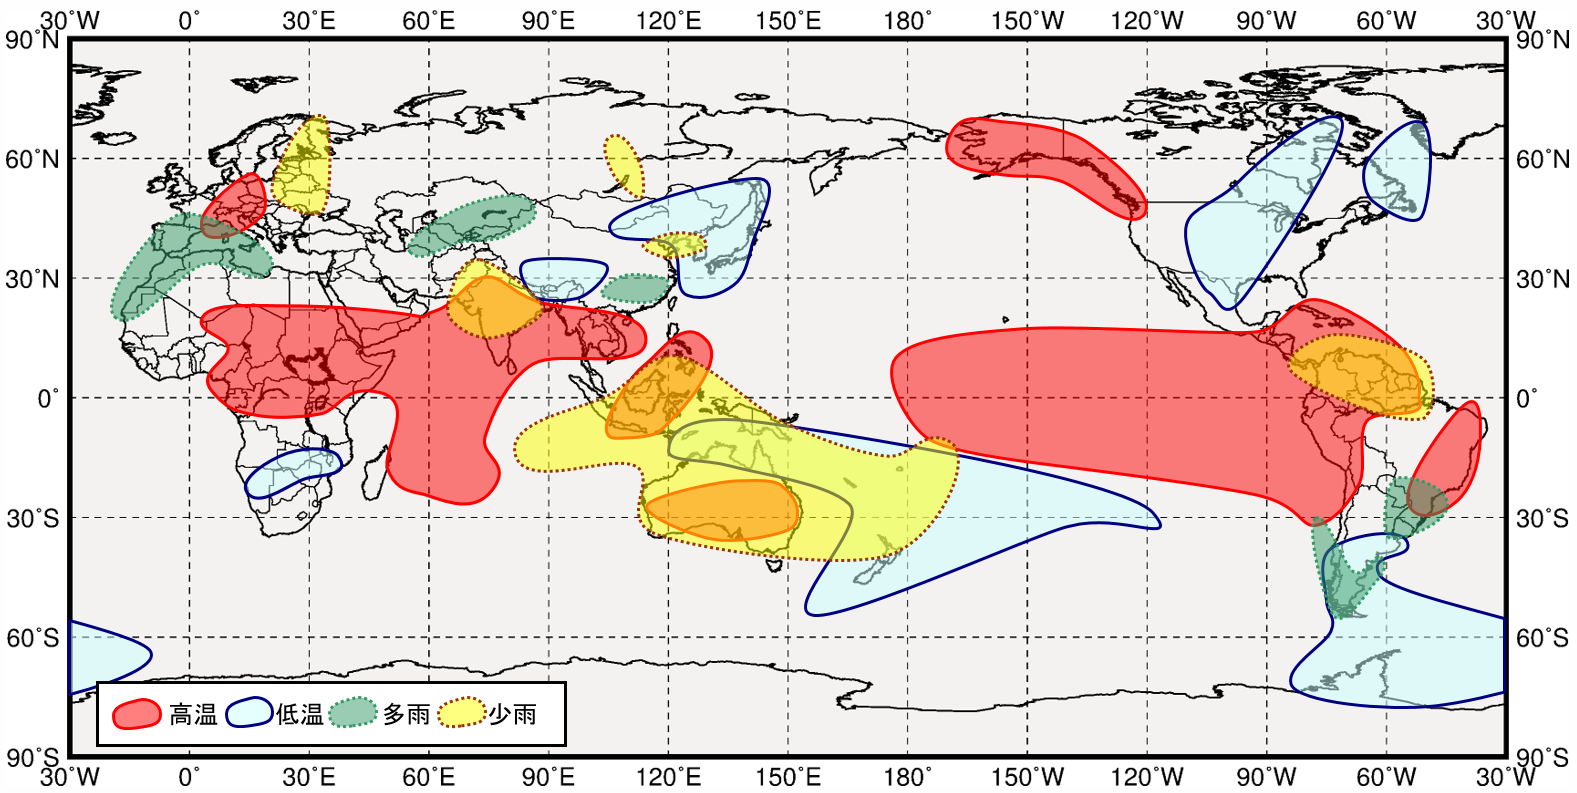 エルニーニョ現象発生時の世界の９月から１１月にかけての気温と降水量の傾向の分布図